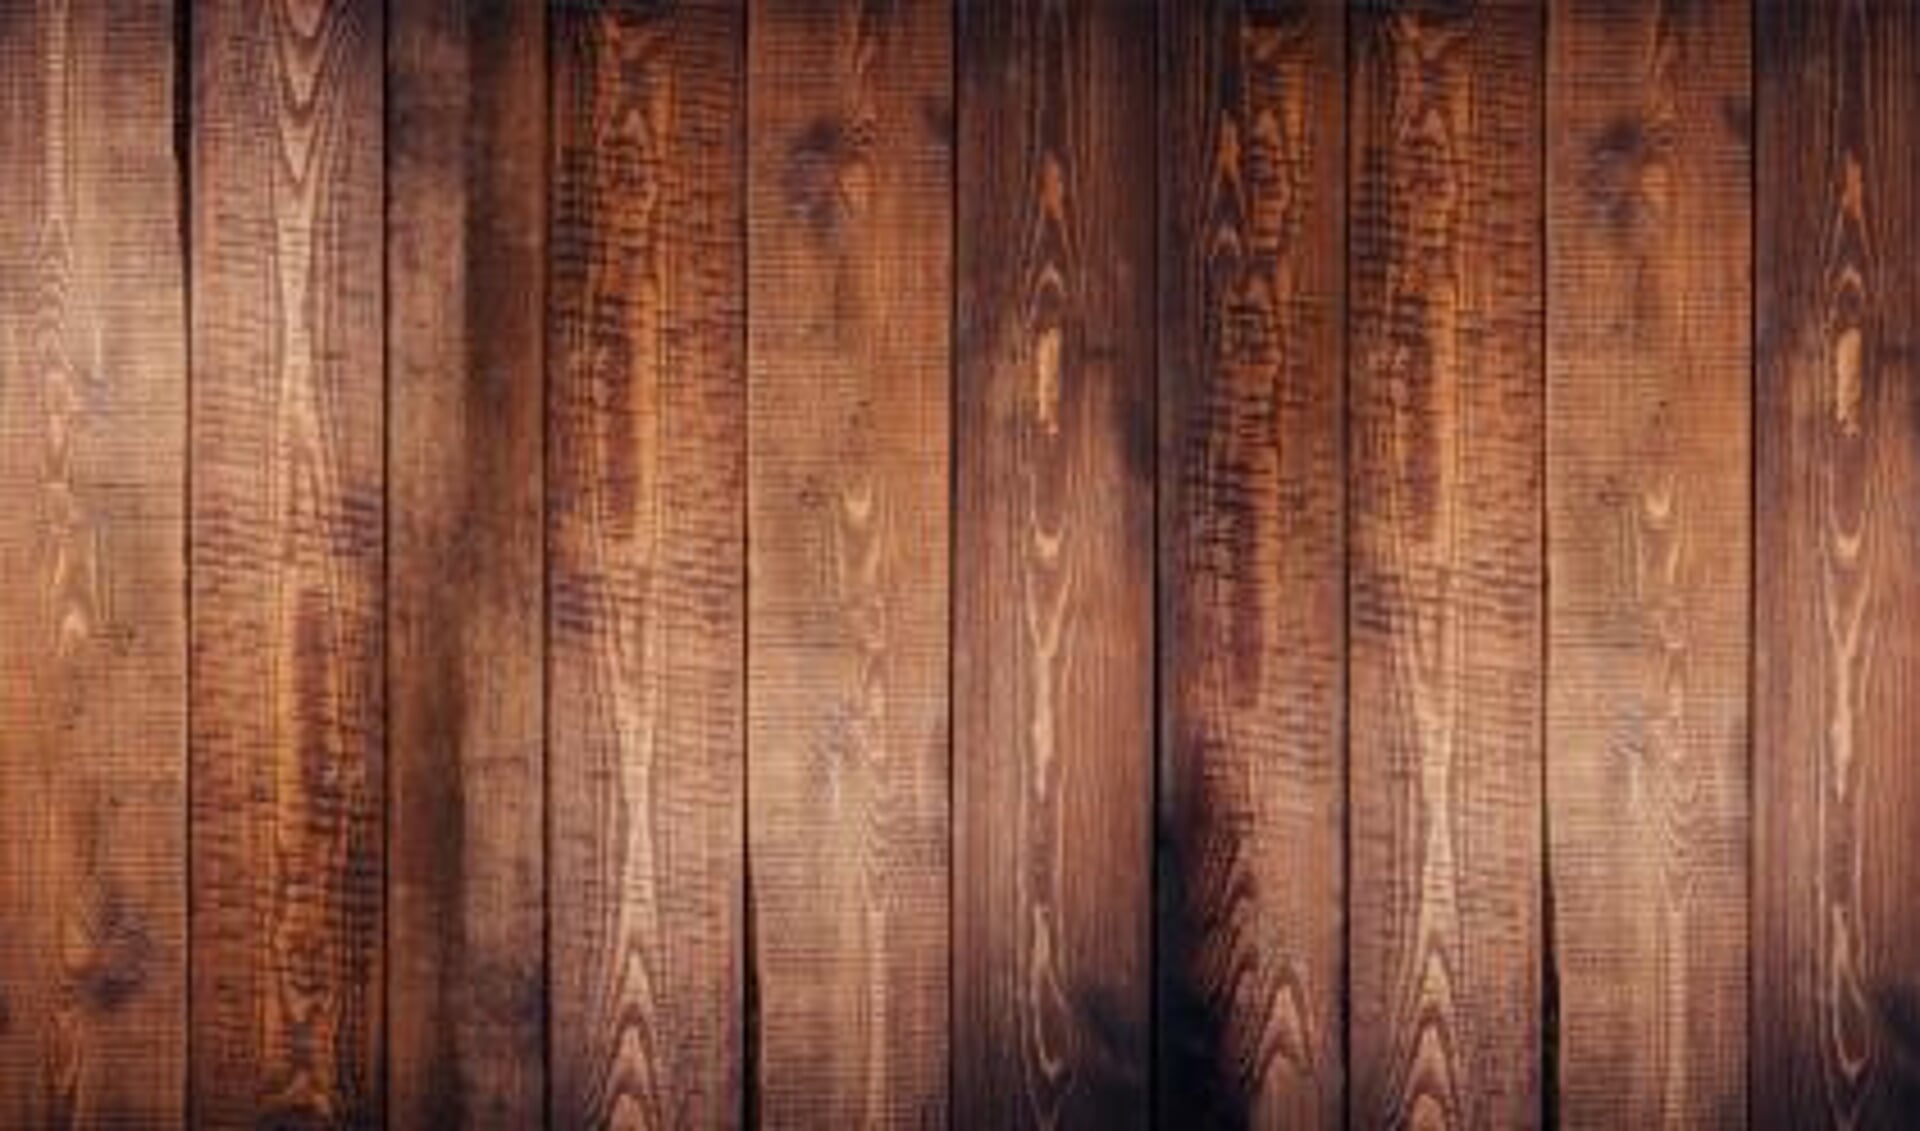 Binnenshuis Vierde voering Oude houten vloeren kopen, waar moet je op letten? | Nieuws uit de regio  Soest